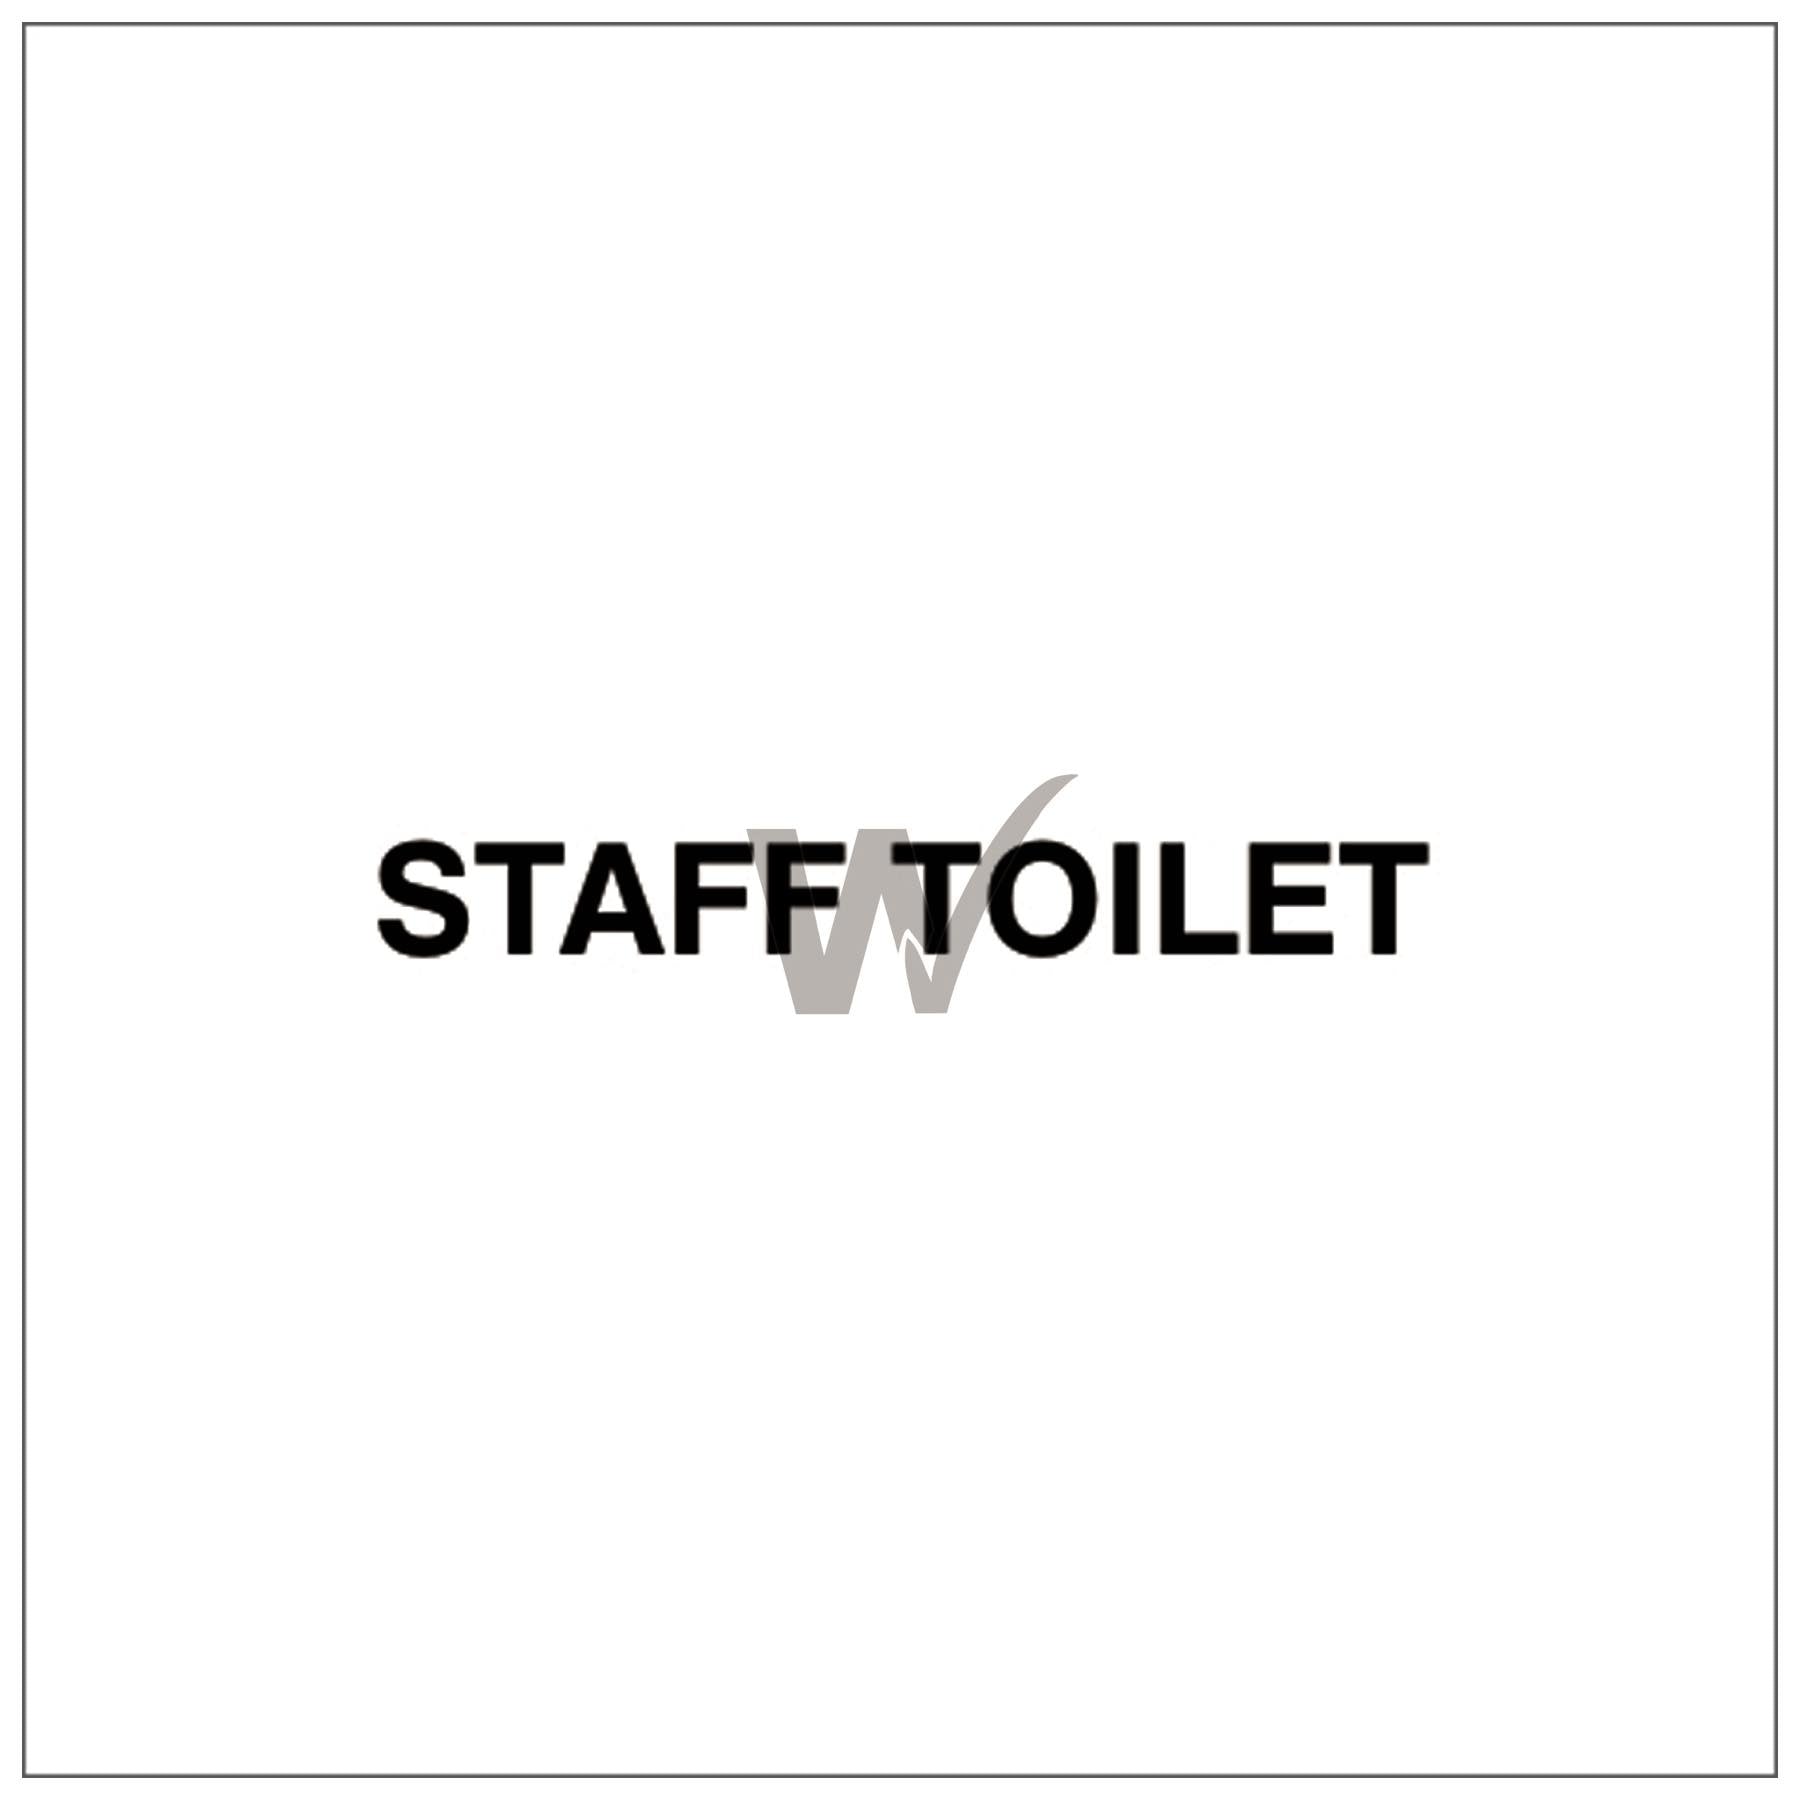 Fire Door Text - Staff Toilet